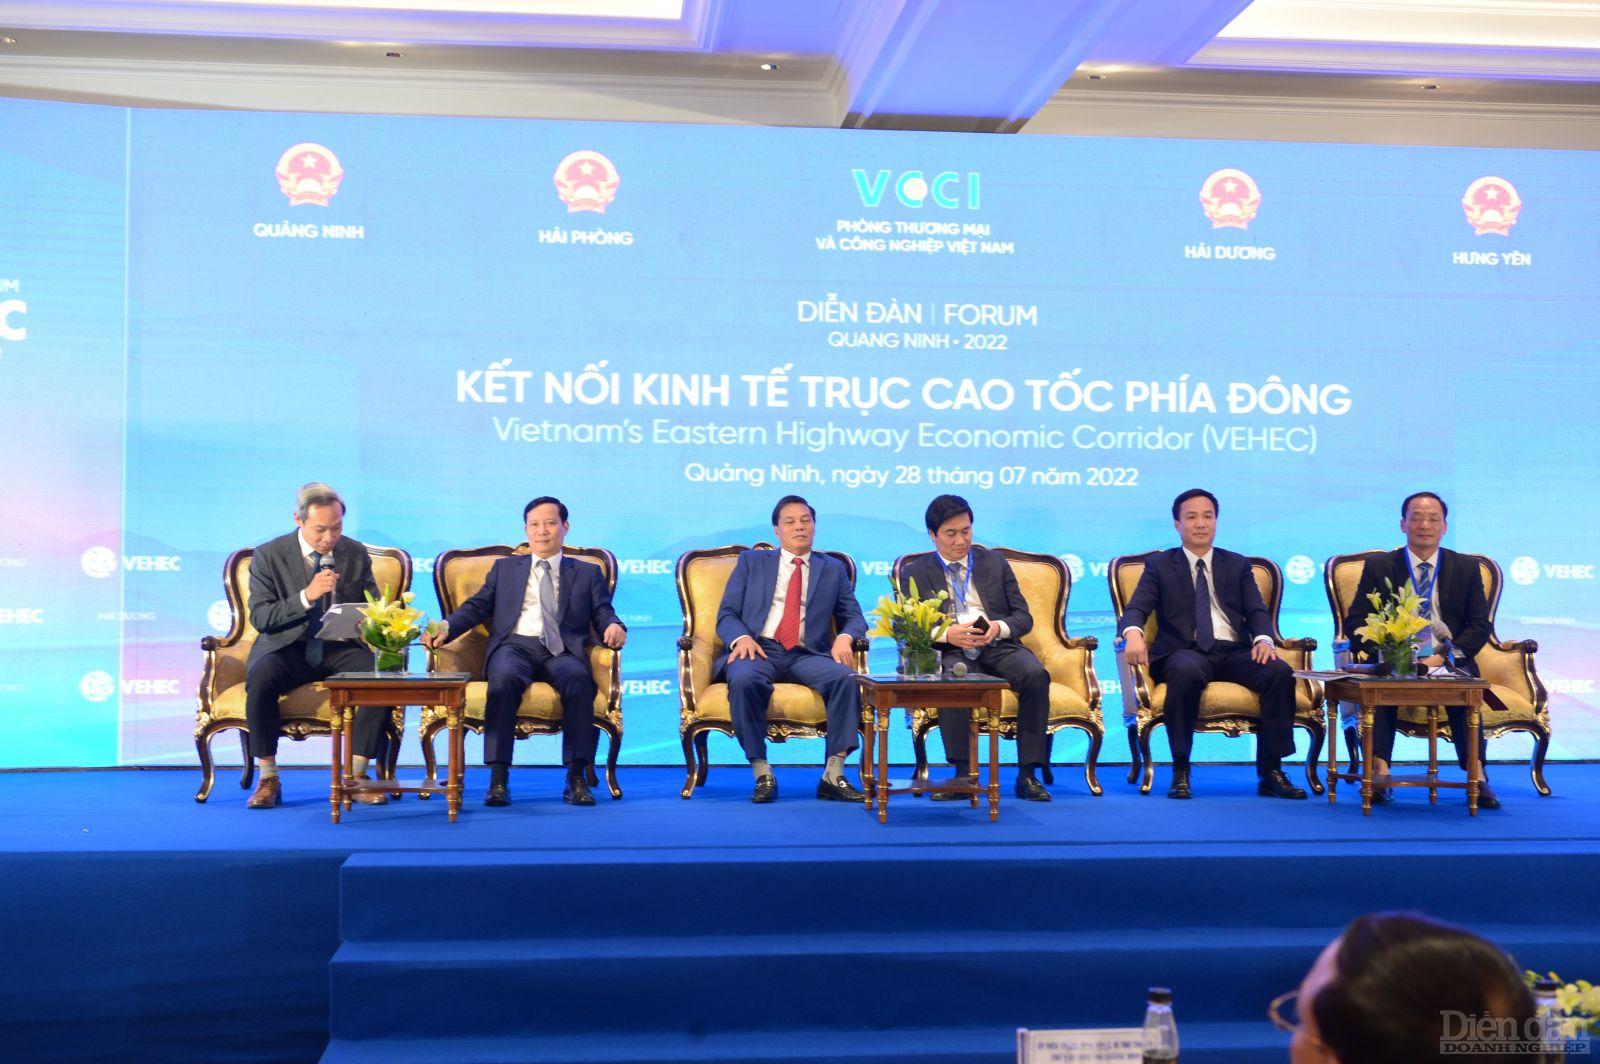 VCCI đã có sáng kiến liên kết kinh tế bốn địa phương Hưng Yên, Hải Dương, Hải Phòng và Quảng Ninh dọc theo đường cao tốc Hà Nội - Móng Cái.